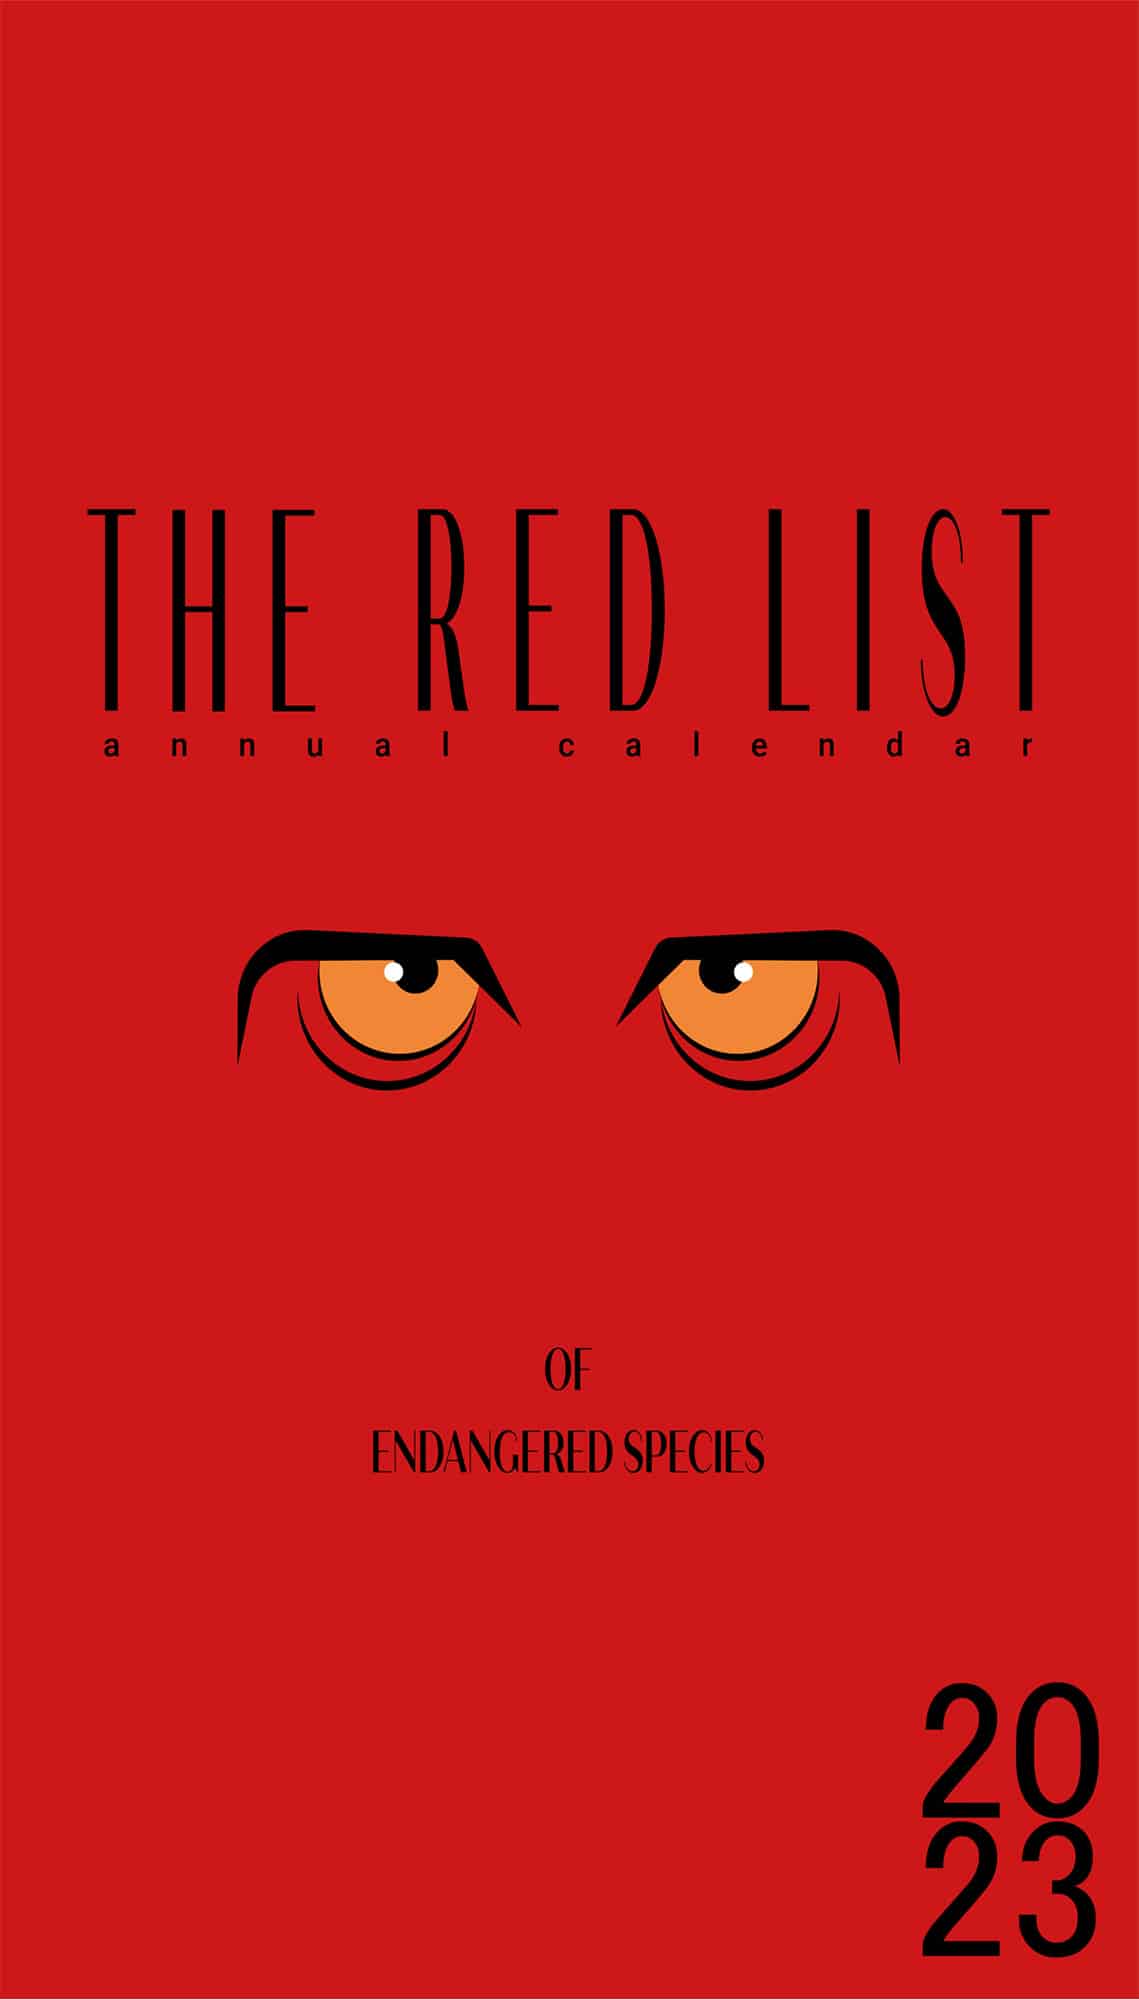 Das cover des red list calendars zeigt ein stilisiertes tier Gesicht